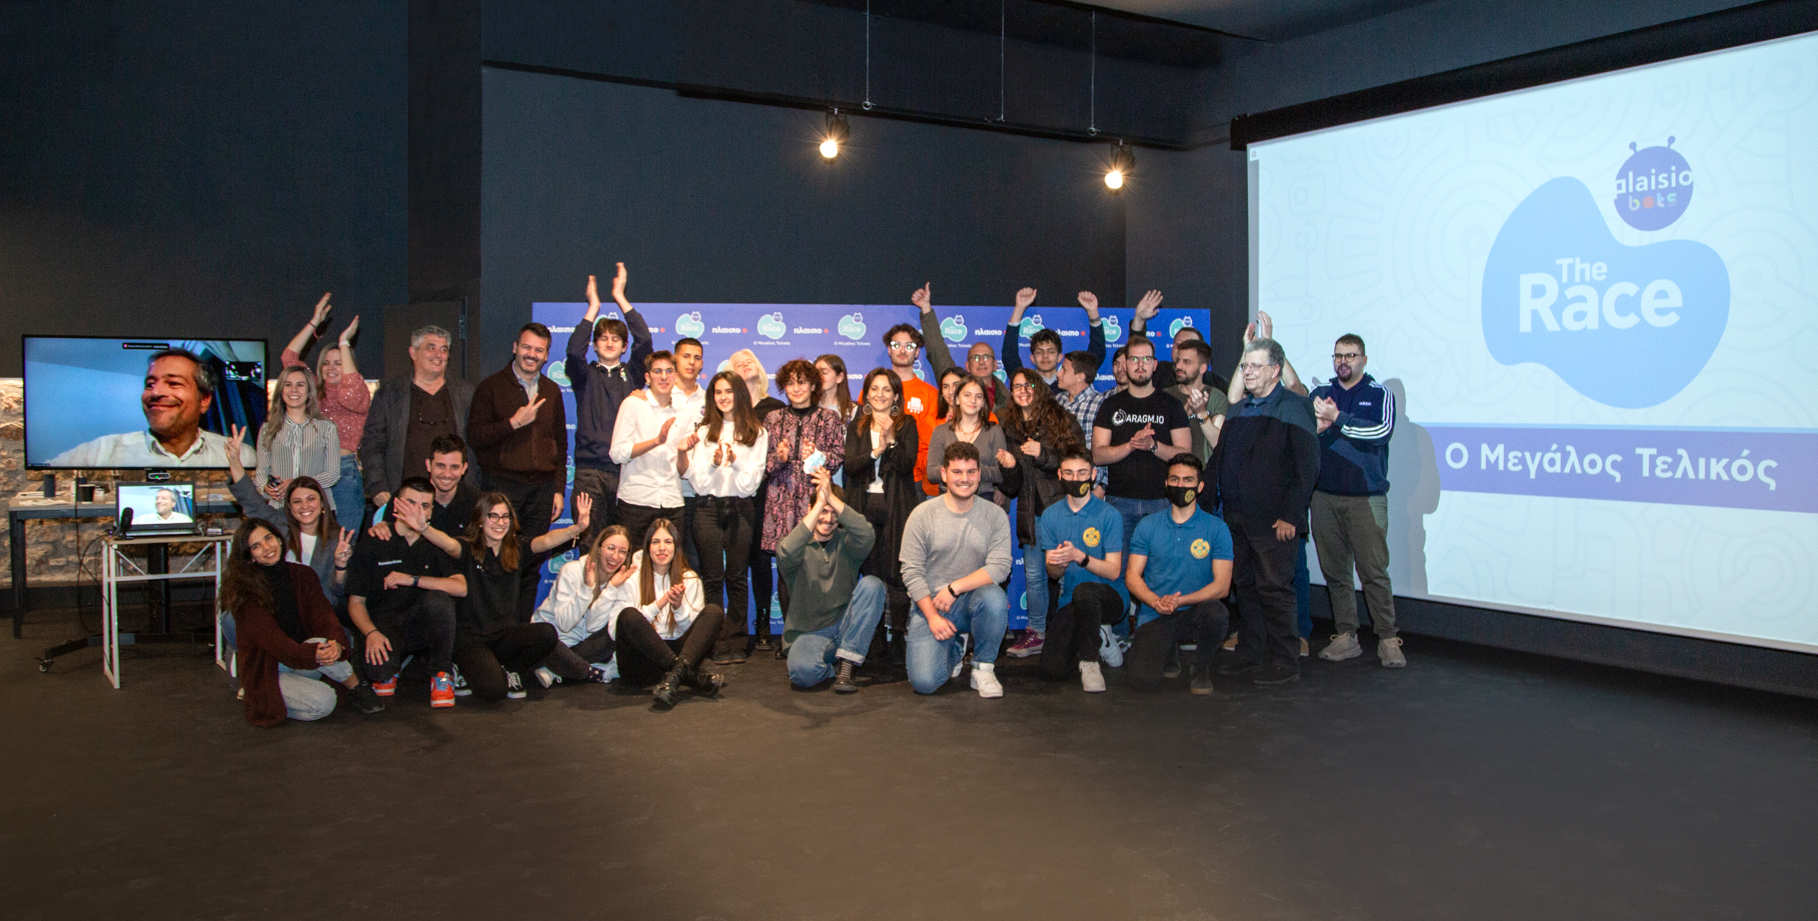 Πλαίσιο: Ολοκληρώθηκε ο πρώτος διαγωνισμός ρομποτικής και επιχειρηματικότητας στην Ελλάδα